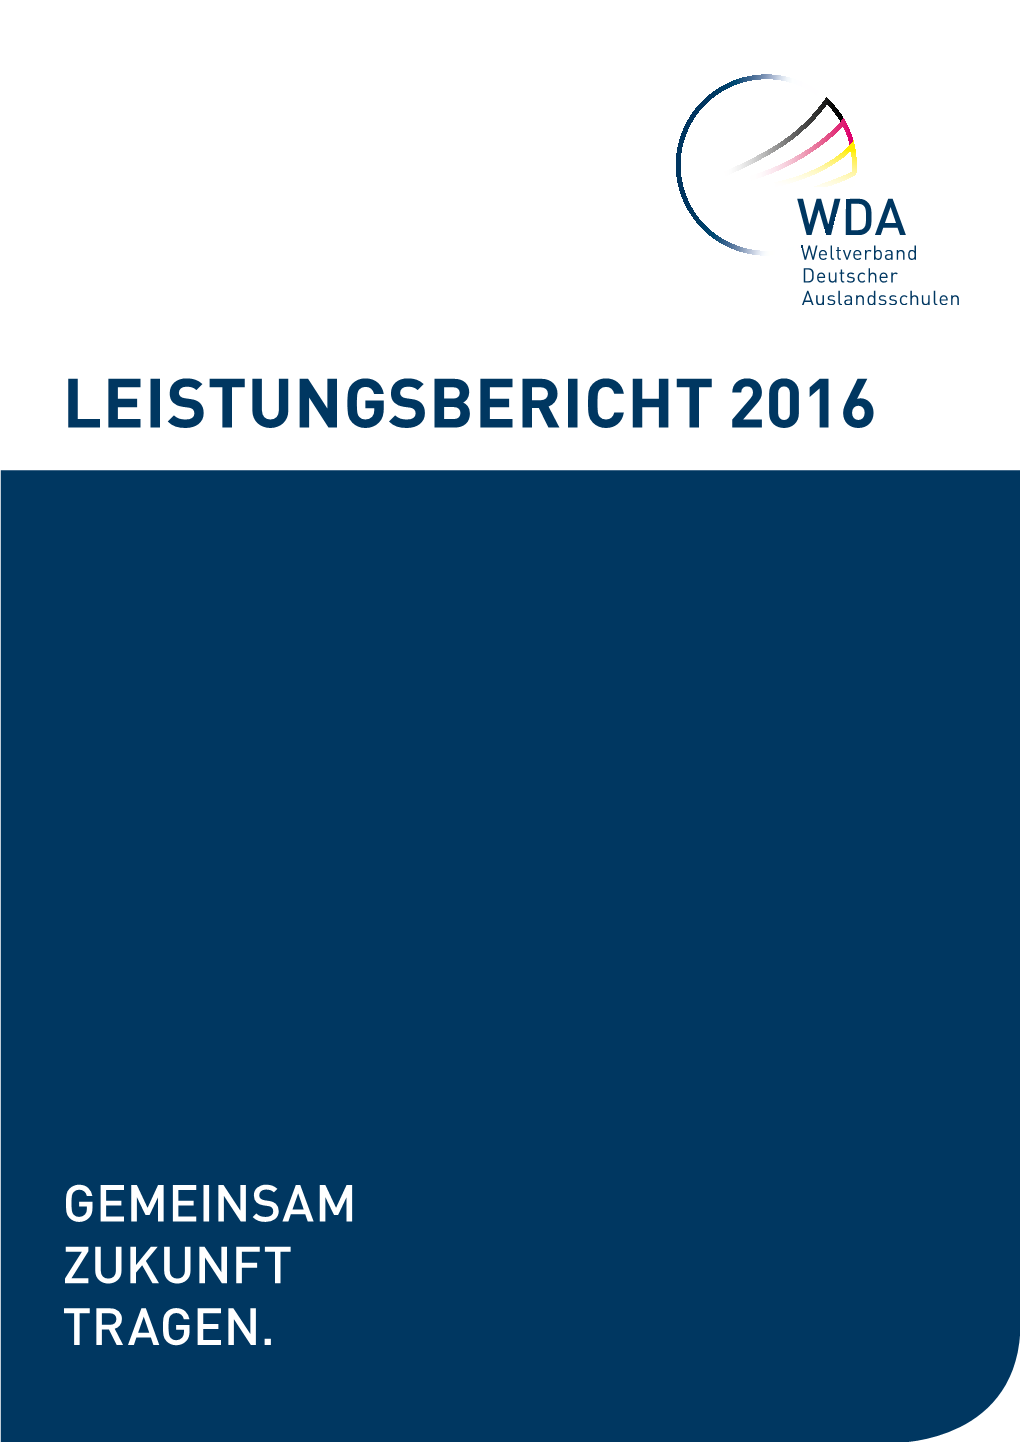 WDA-Leistungsbericht 2016